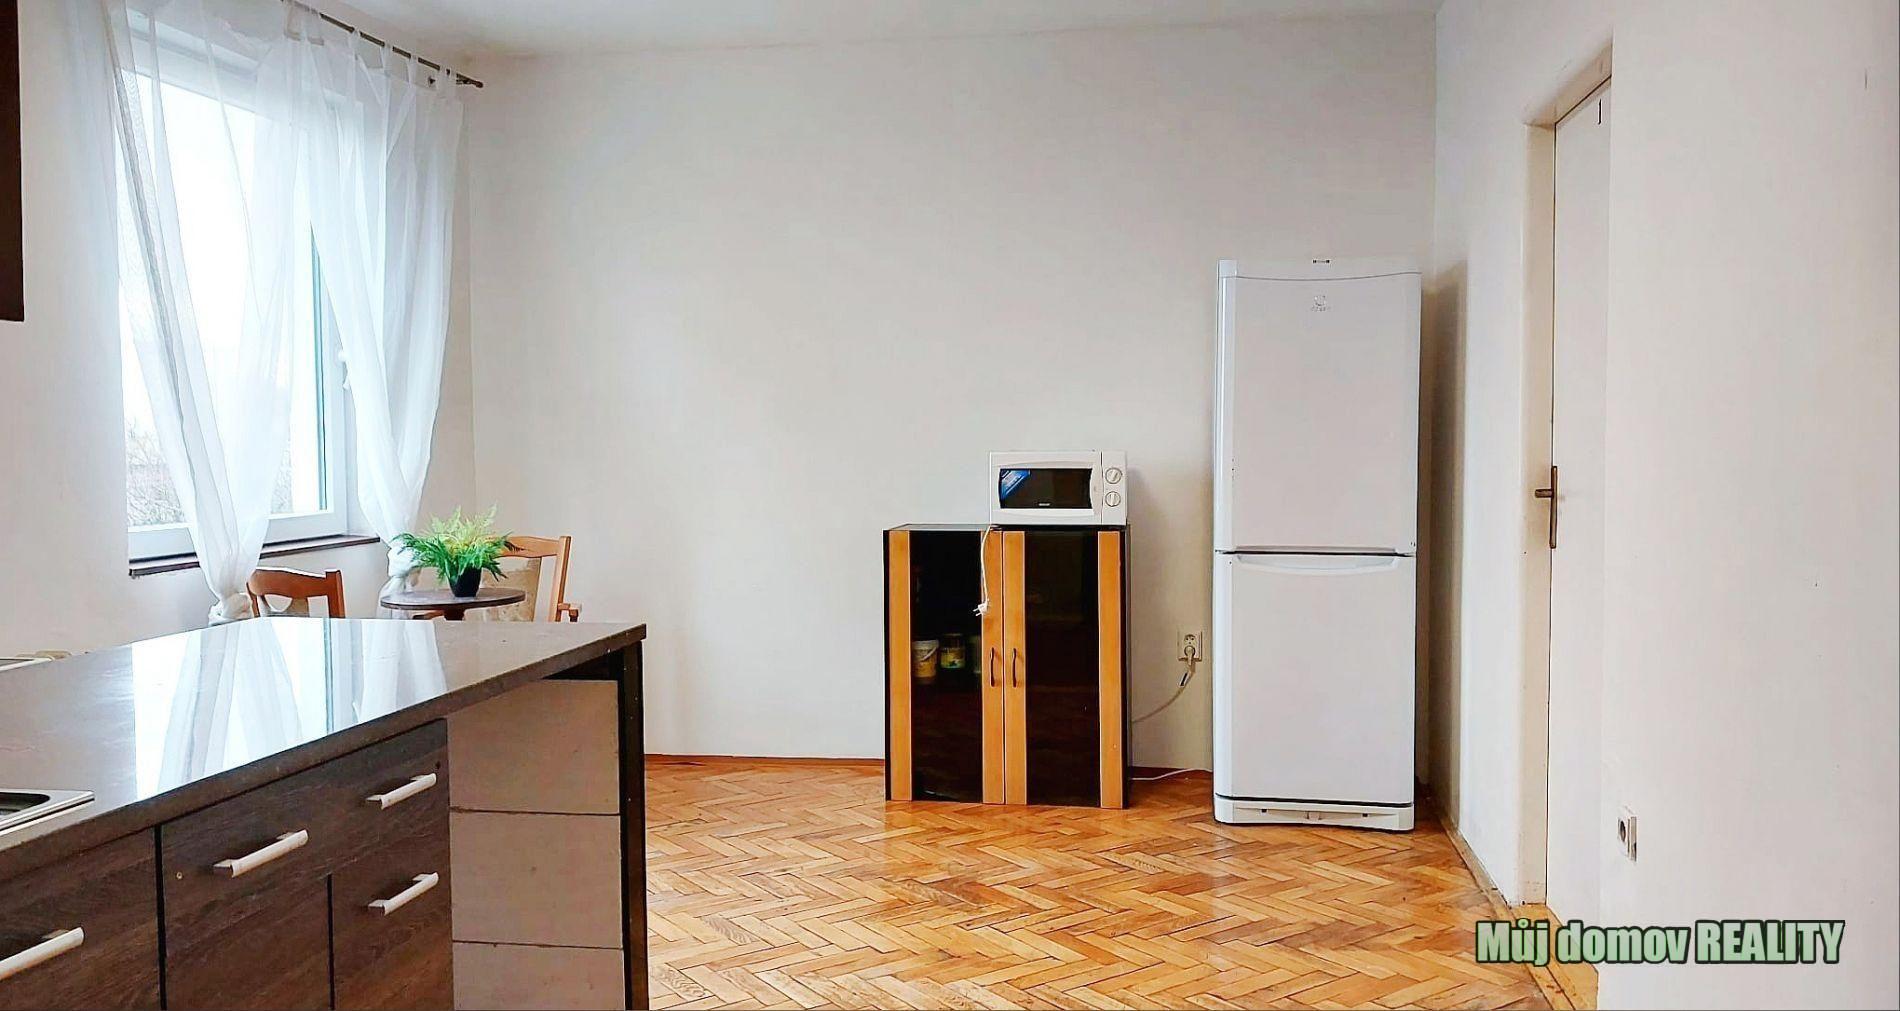 Prodej řadového rodinného domu 324 m2, 3 bytové jednotky se samostatným vchodem. Praha Čimice,, obrázek č. 3